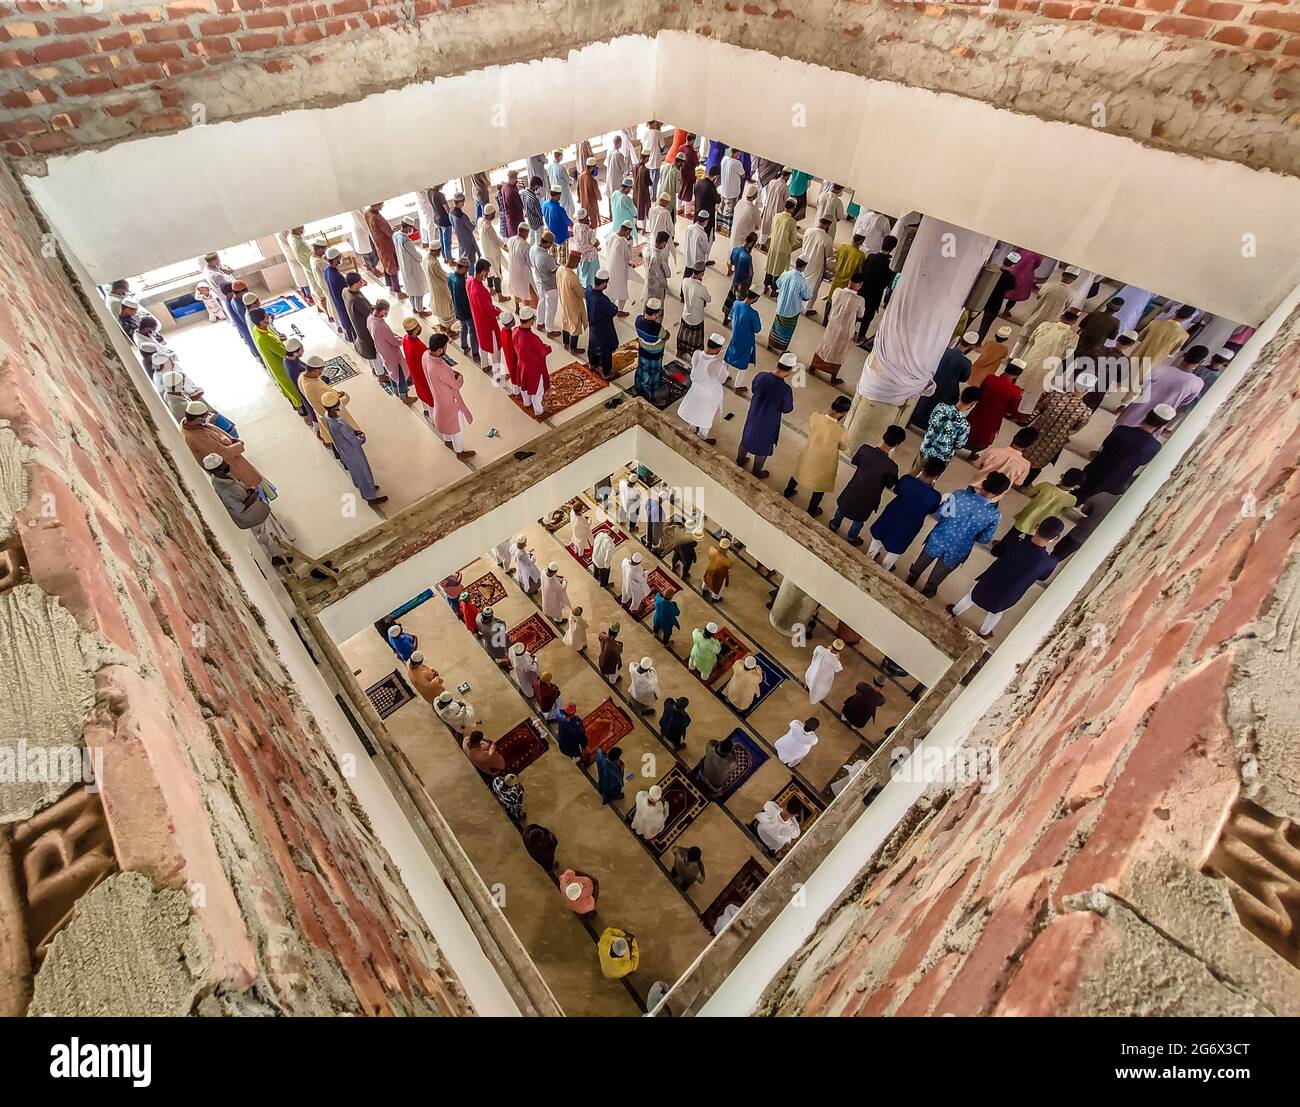 Barishal, Barishal, Bangladesh. 9 juillet 2021. Les musulmans effectuent les prières du vendredi sans maintenir aucune distance sociale dans une mosquée où le pays est enfermer pour contenir la deuxième vague de la pandémie COVID-19 dans la ville de Barishal, au Bangladesh. Crédit: Mustasinur Rahman Alvi/ZUMA Wire/Alamy Live News Banque D'Images